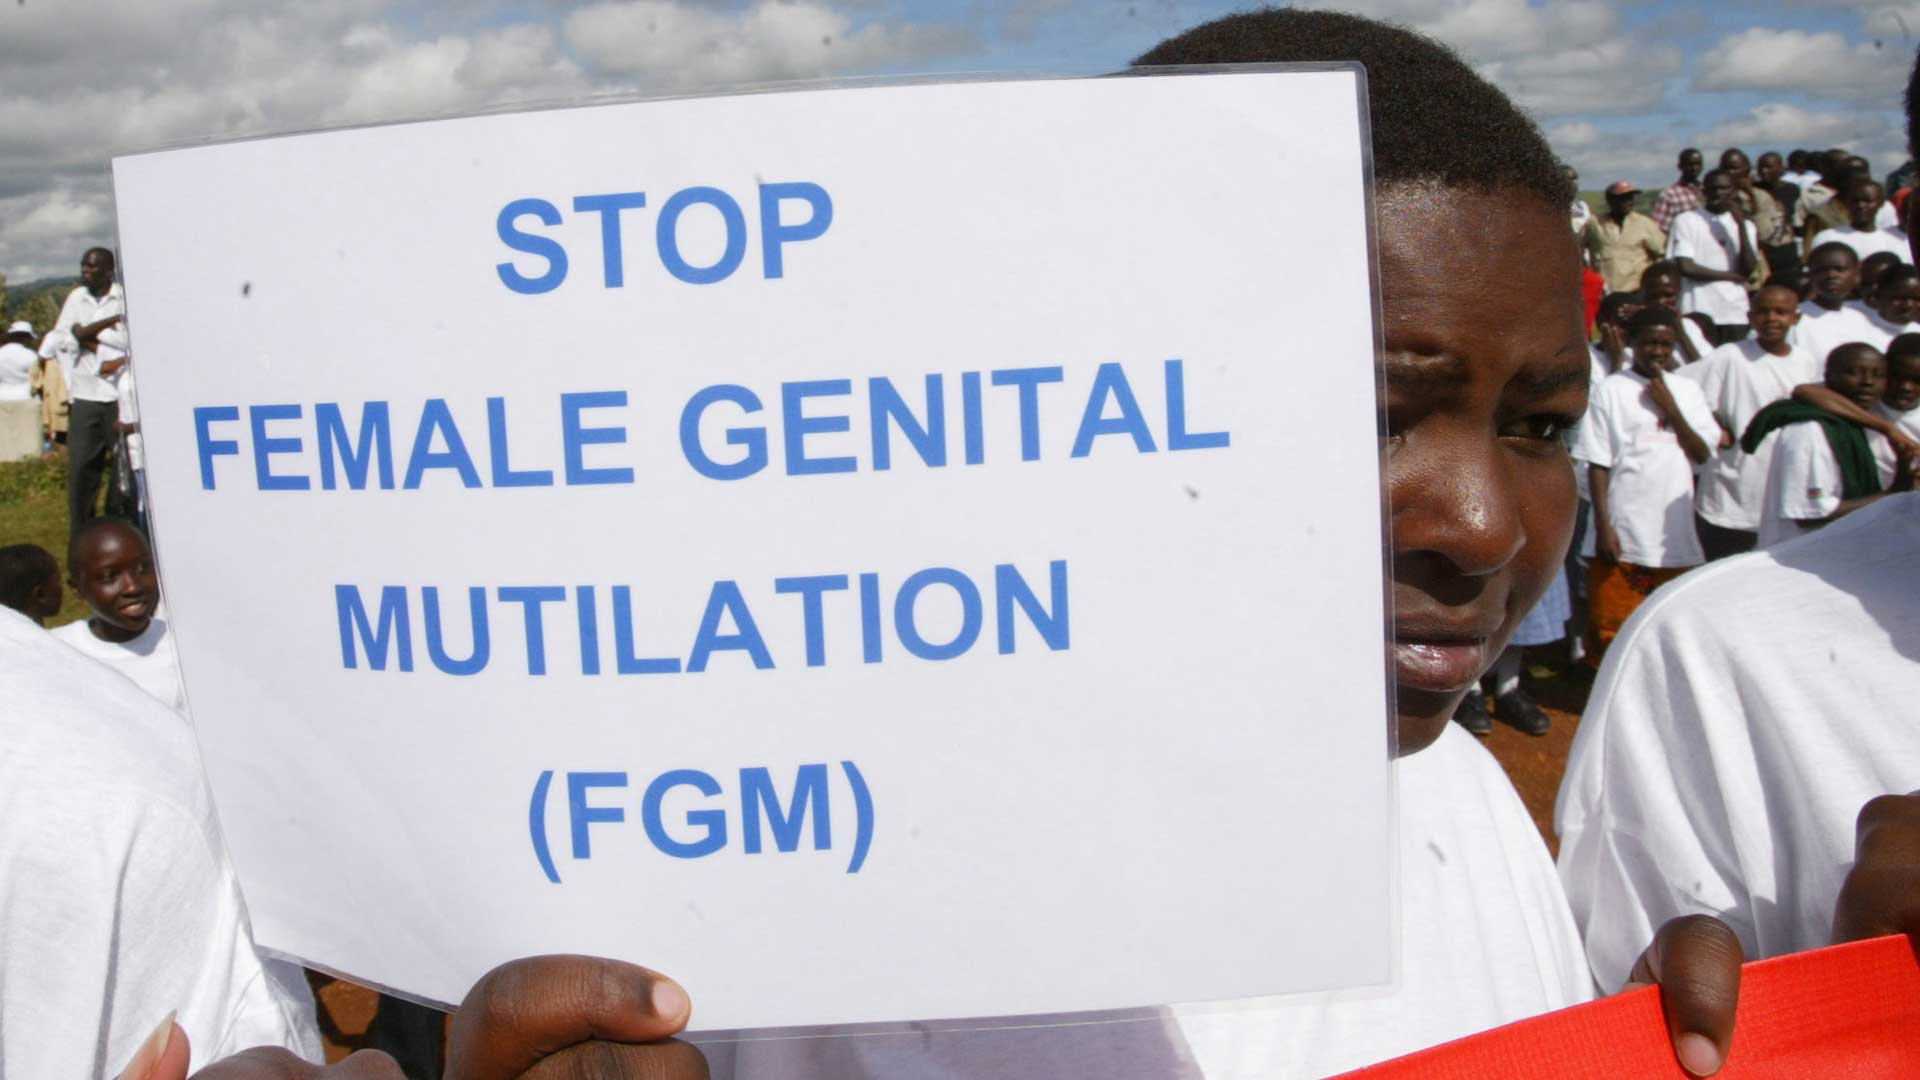 La muerte de una niña provoca el primer juicio contra la mutilación genital femenina en Somalia